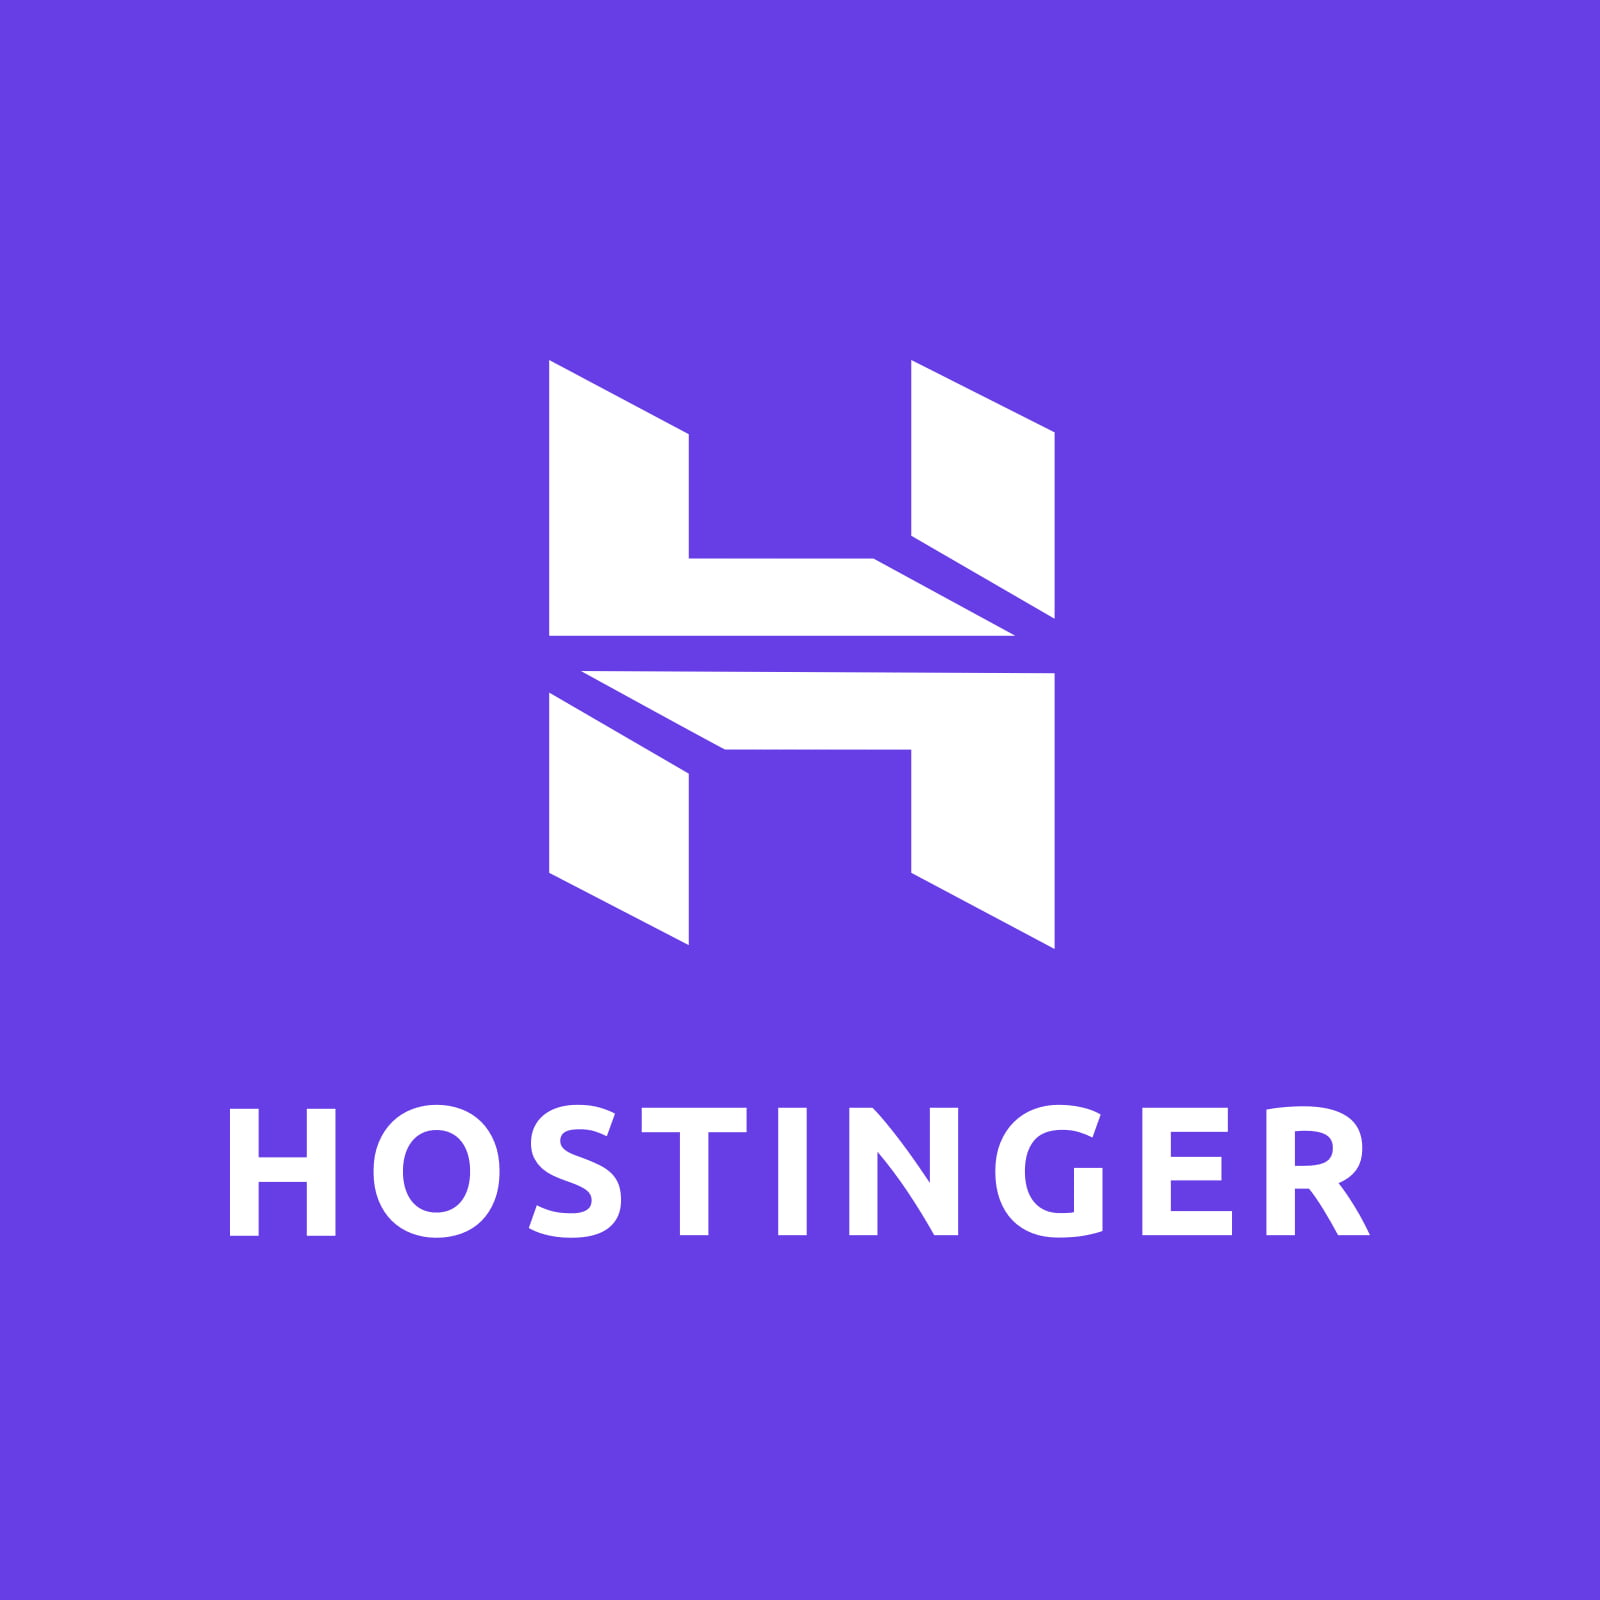 Hostinger_Vertical_White